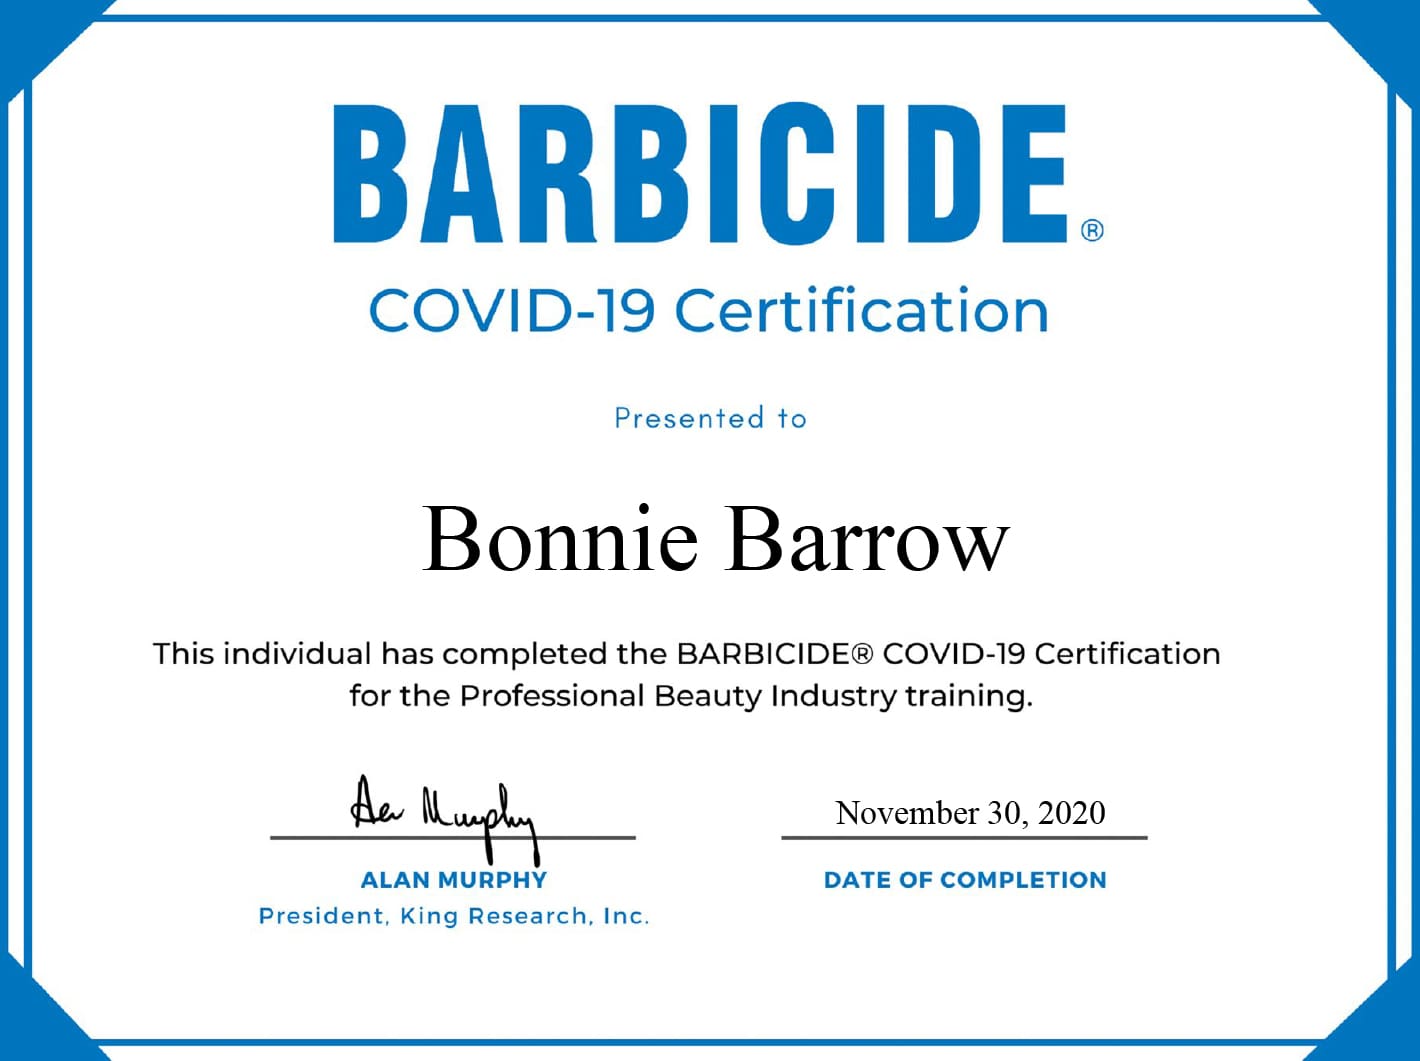 Barbicide Covid-19 Certification